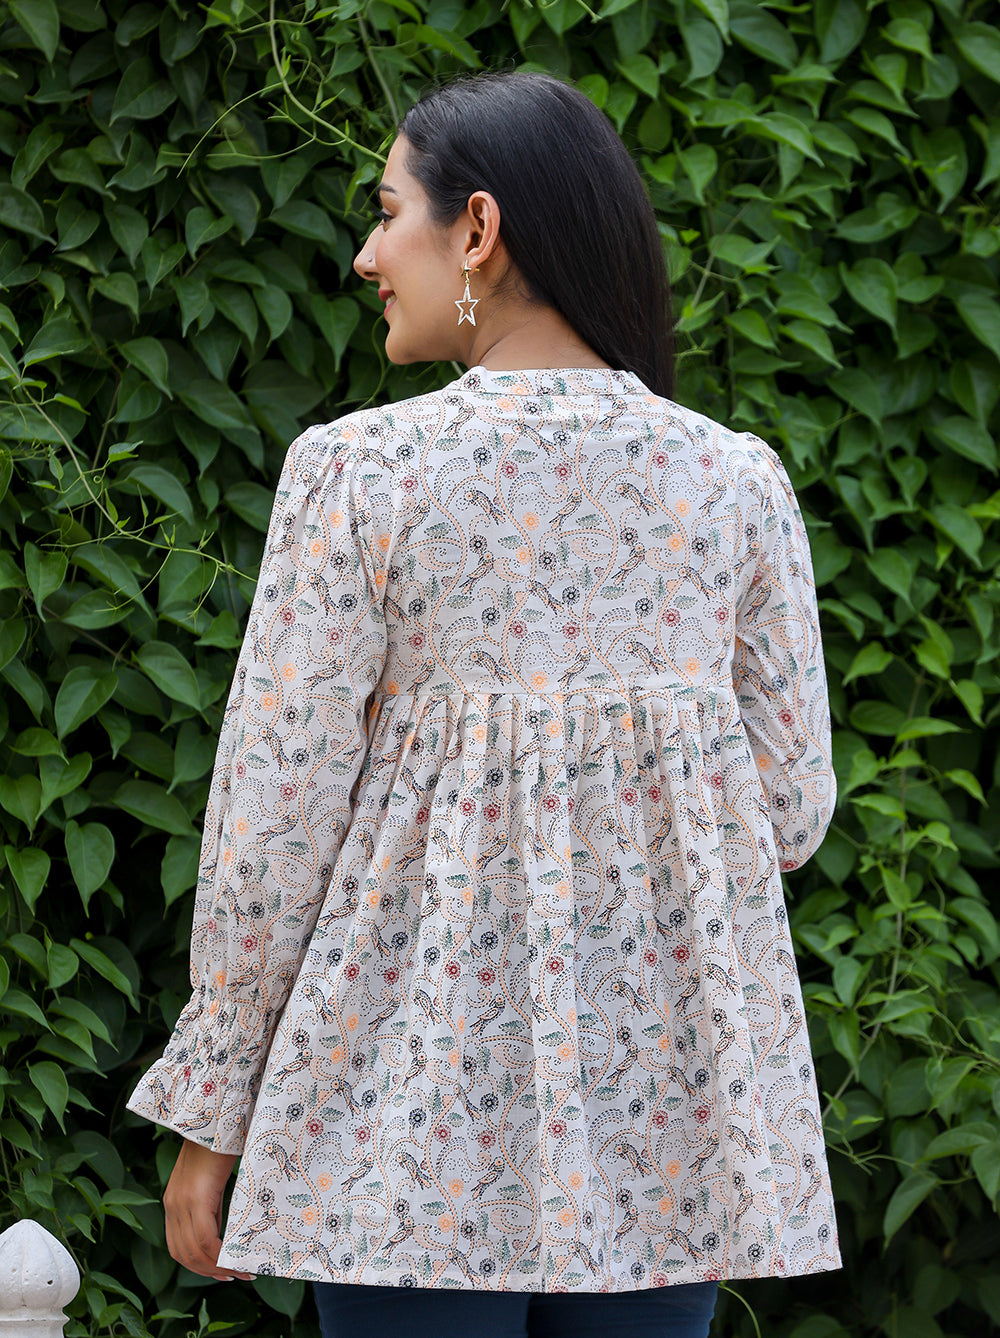 Buy White Summer Tops | Designer Short kurti for Women & Girls | kaajh